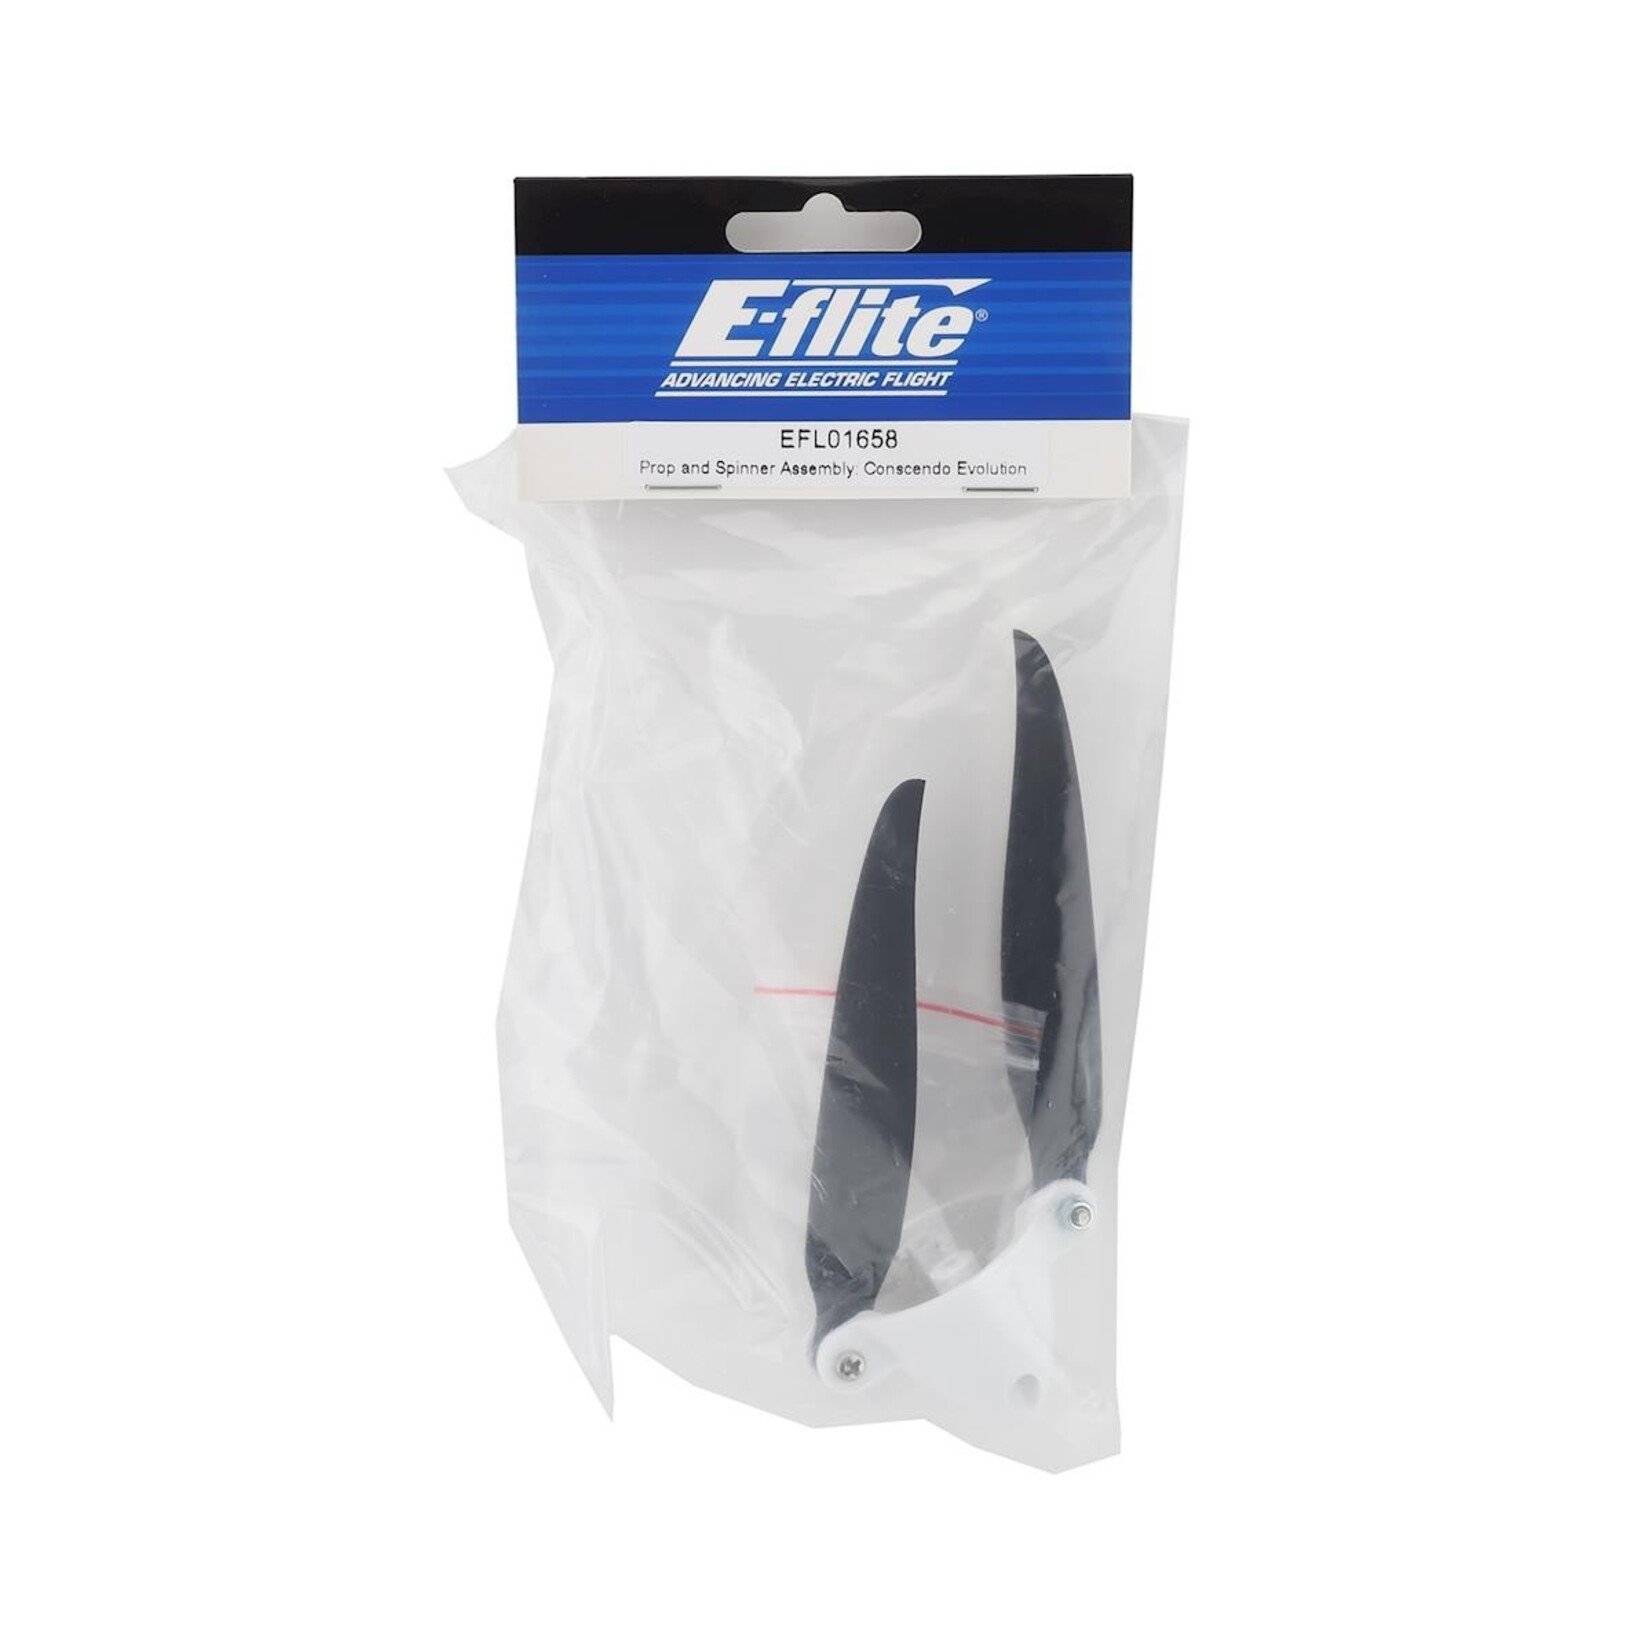 E-flite E-flite Conscendo Evolution Propeller & Spinner #EFL01658